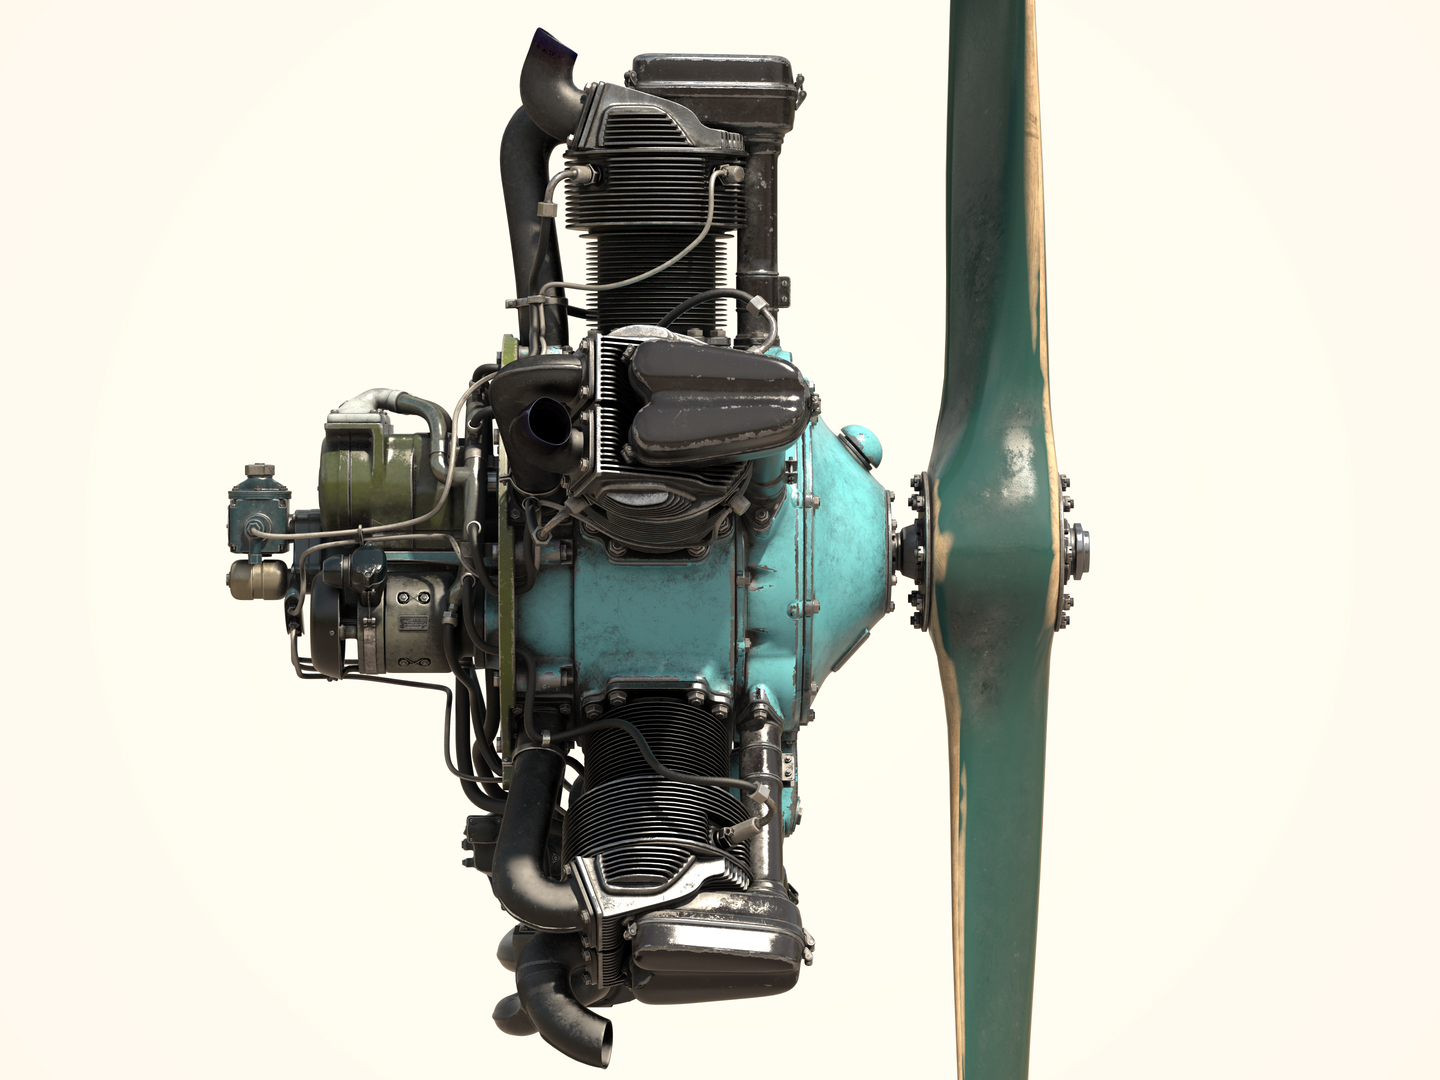 Modello 3D del motore aeronautico M-11 in 3d max vray 2.5 immagine